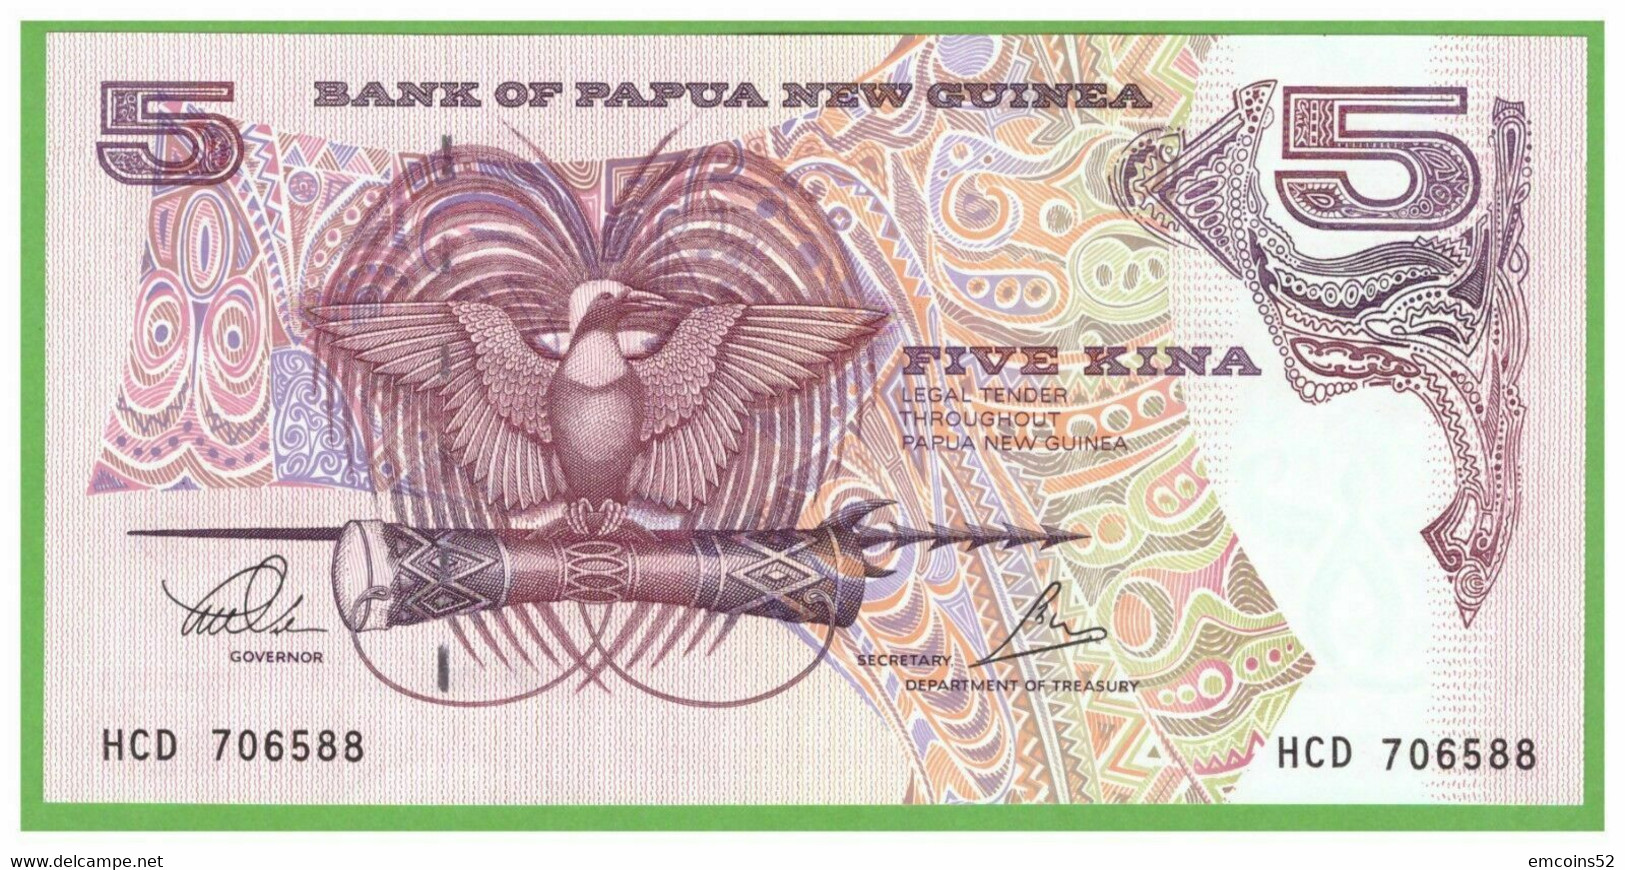 PAPUA NEW GUINEA 5 DOLLARS 2000  P-13c  UNC - Papoea-Nieuw-Guinea